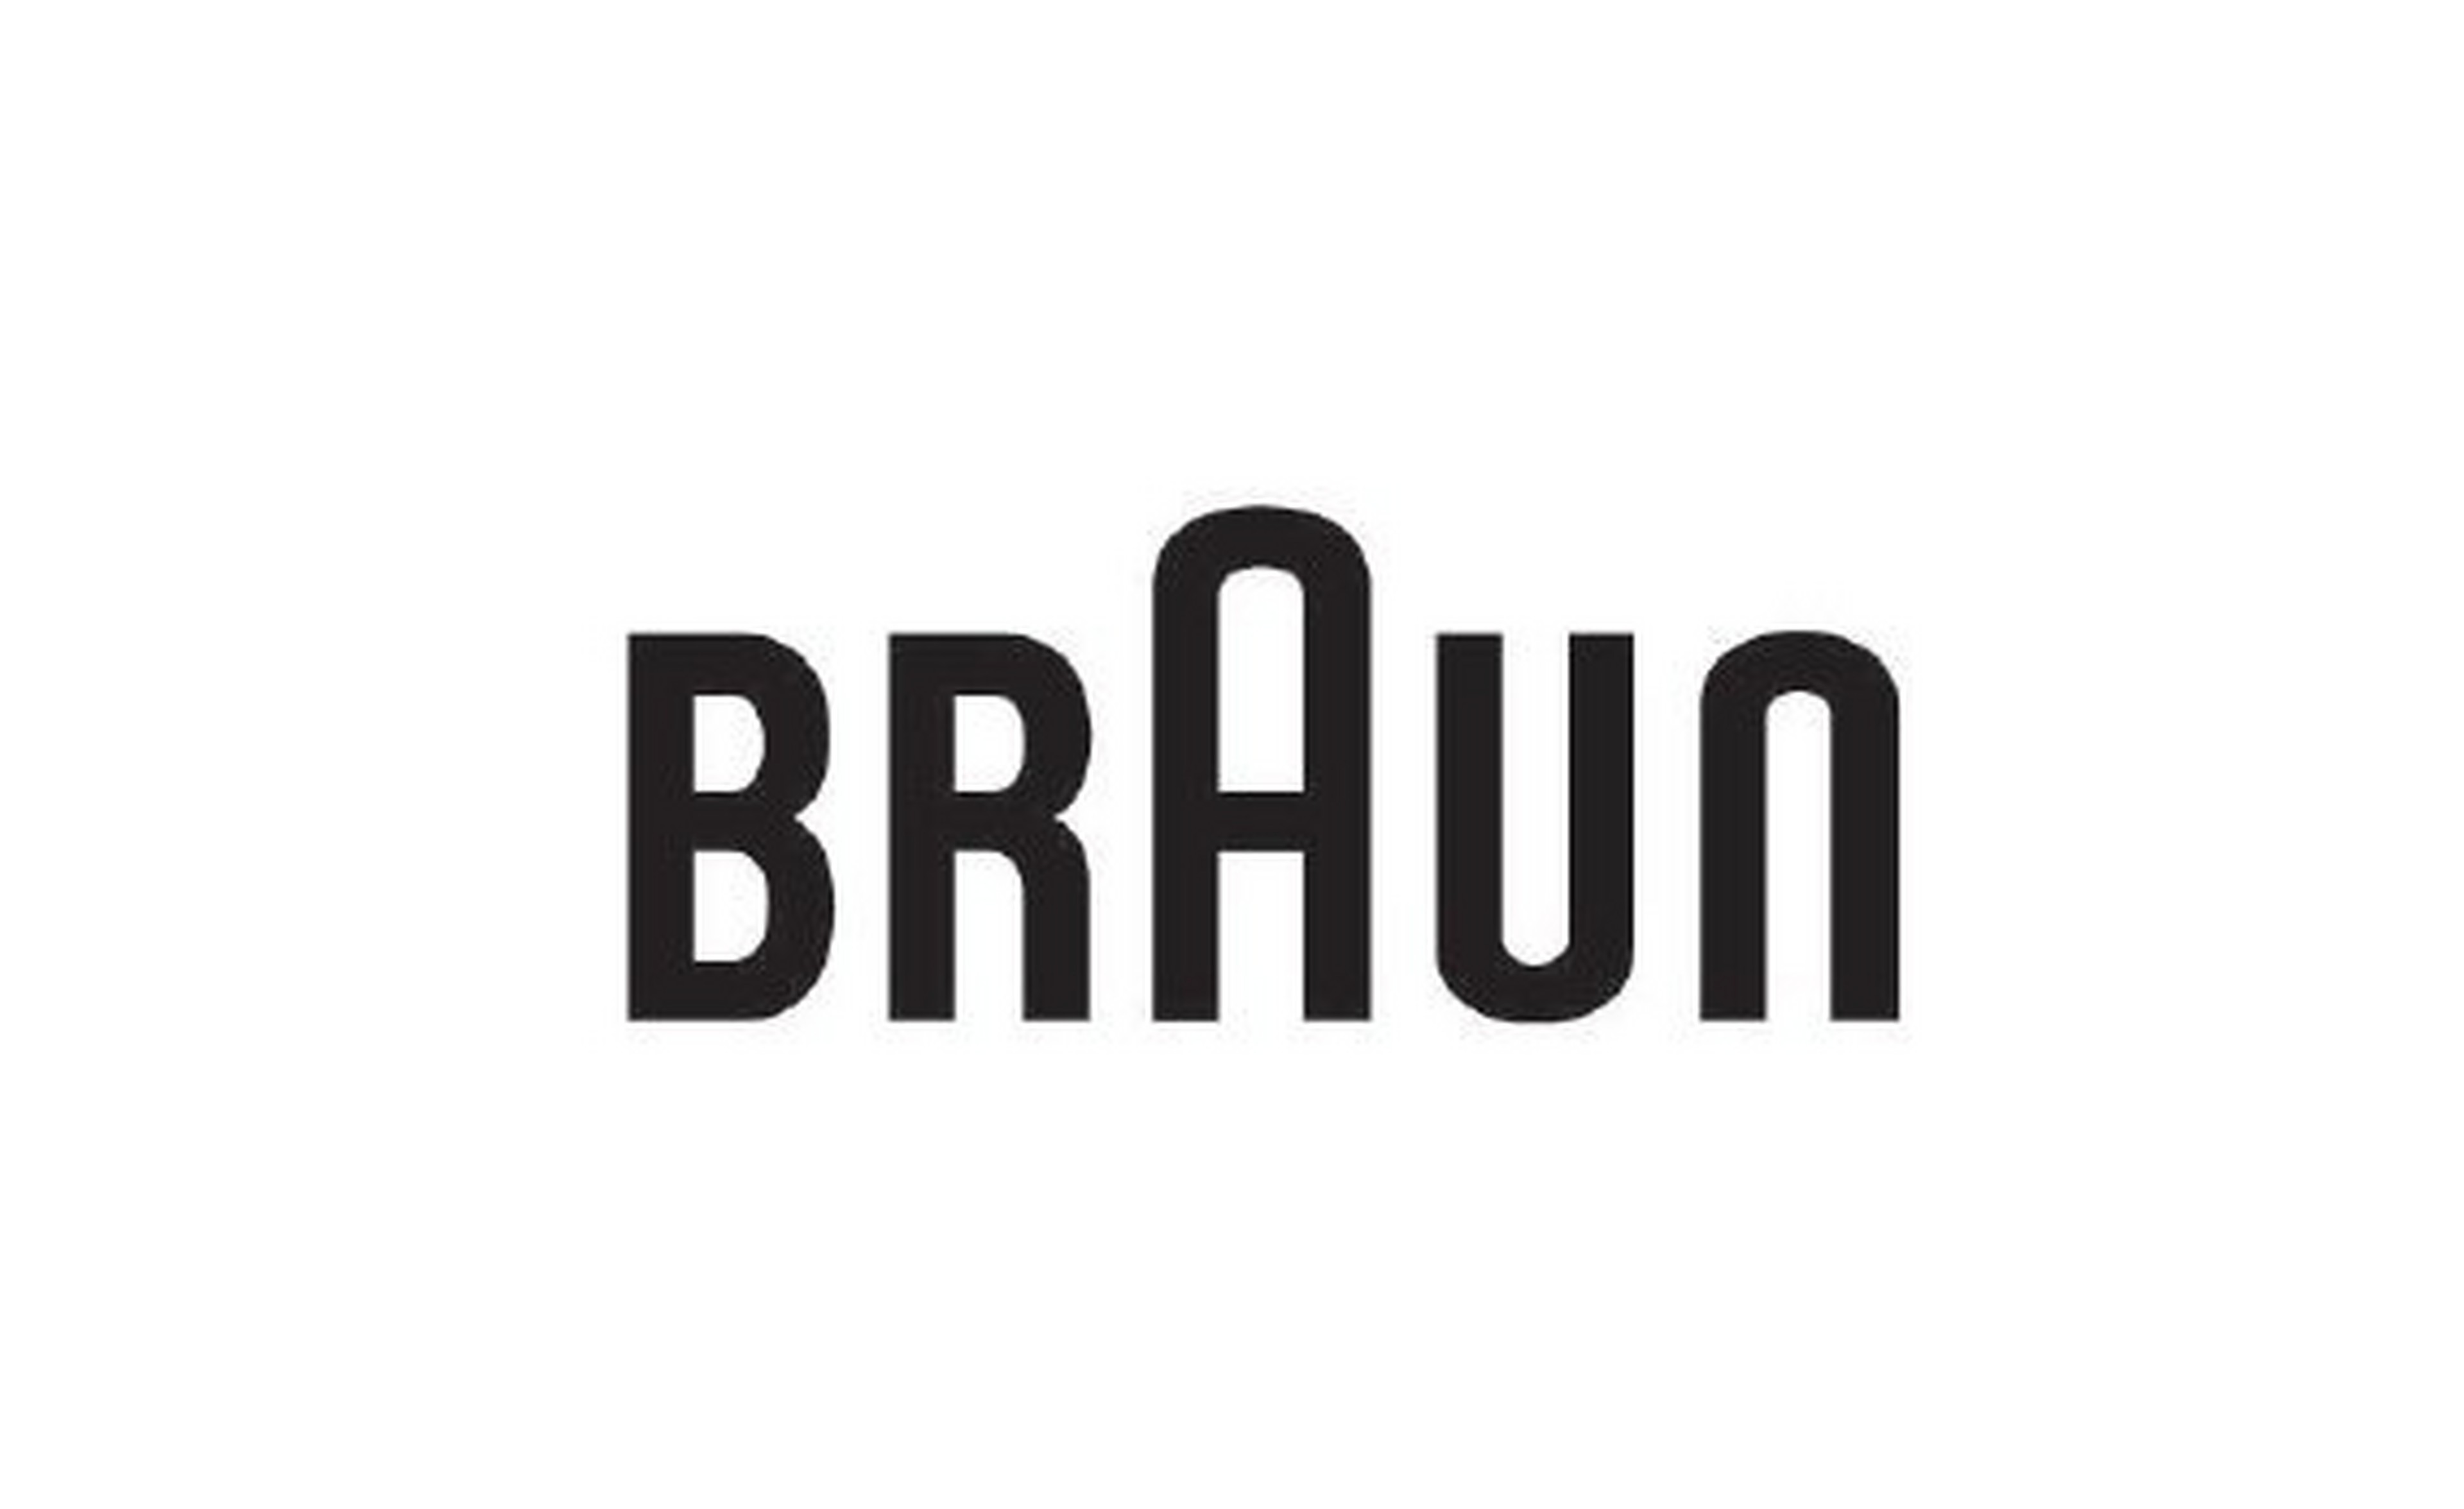 Braun logotype